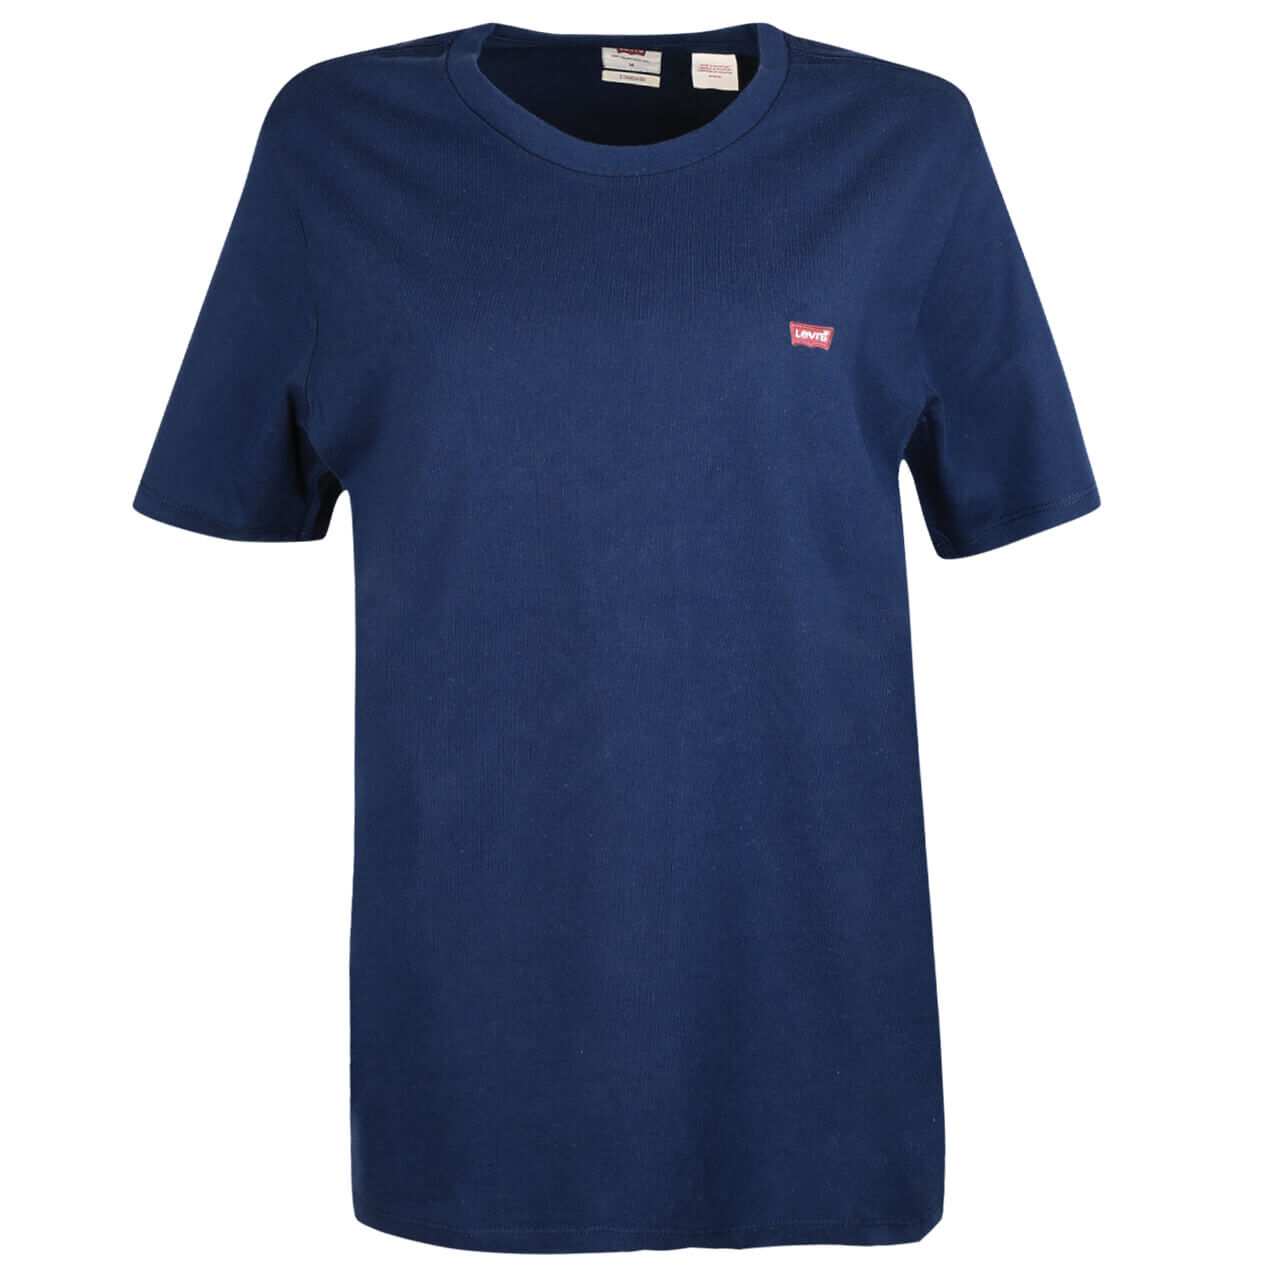 Levi's® T-Shirt für Herren in Dunkelblau, FarbNr.: 0017